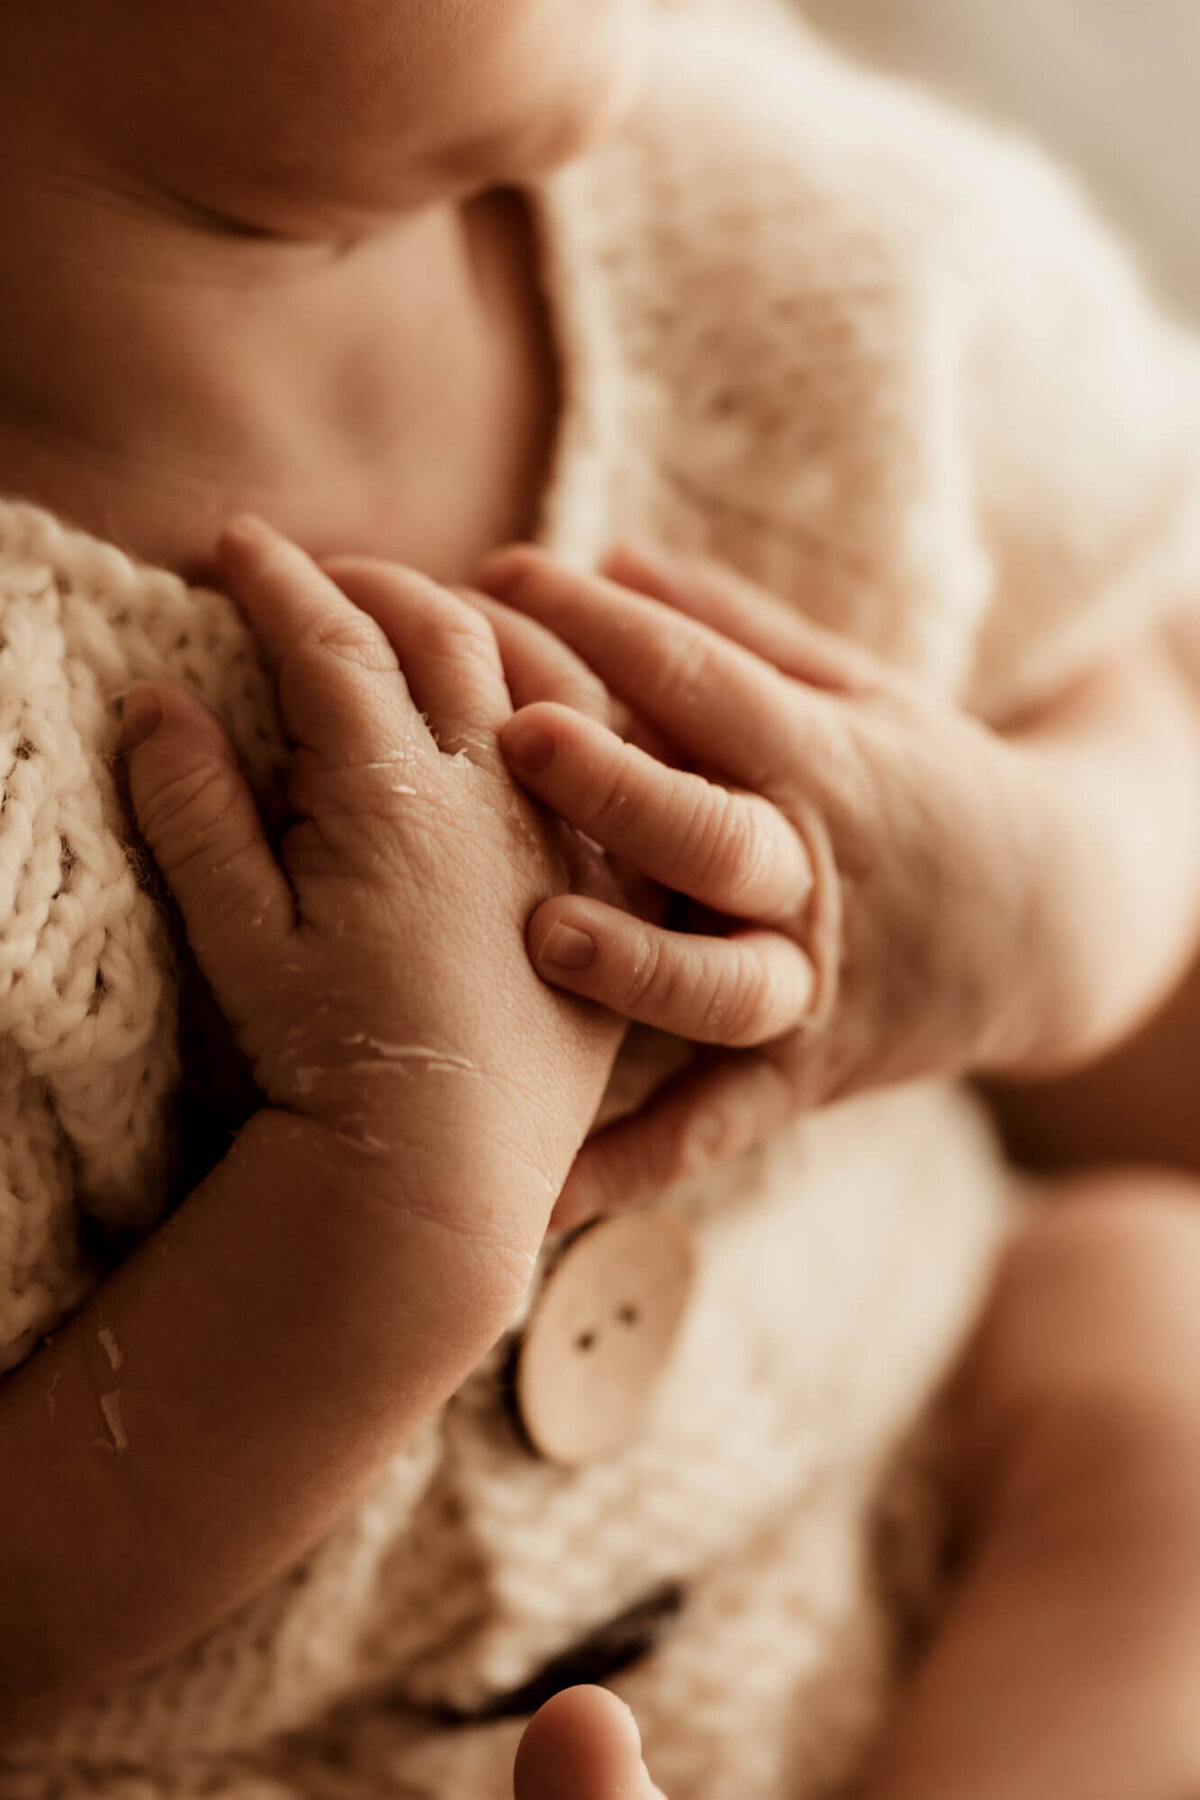 Newborn baby boy's delicate hands.